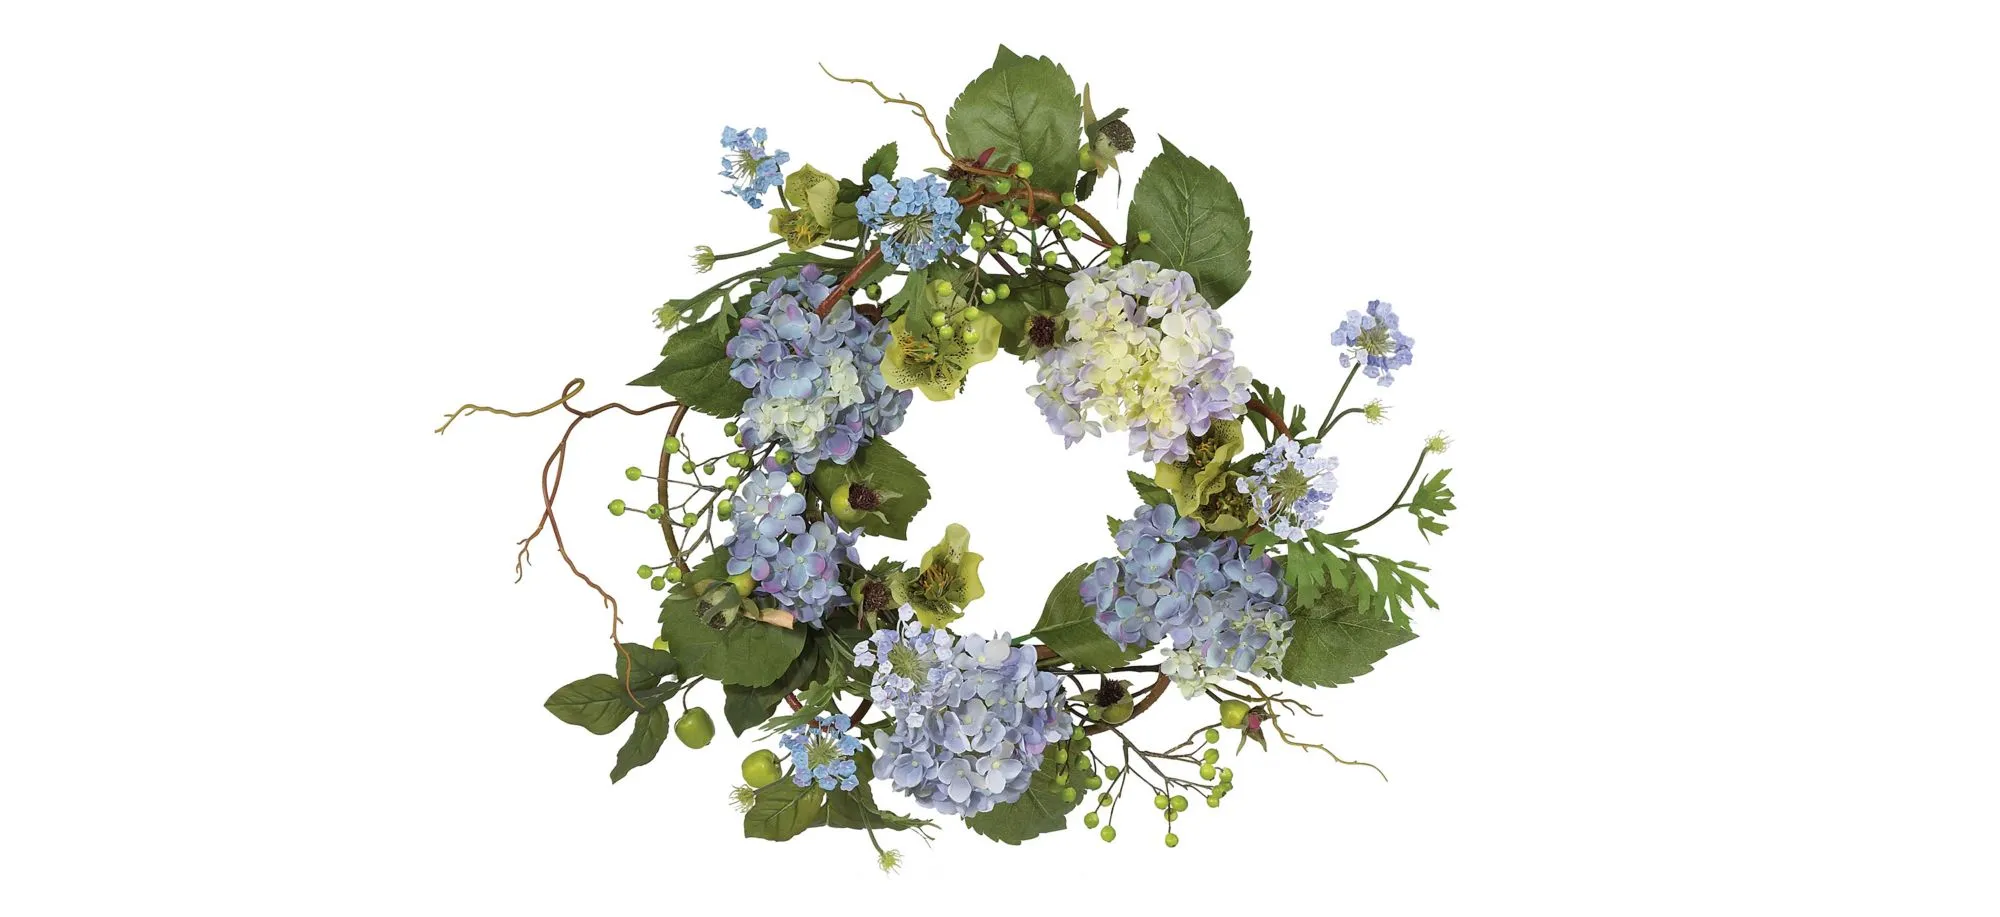 20in. Hydrangea Wreath in Blue by Bellanest